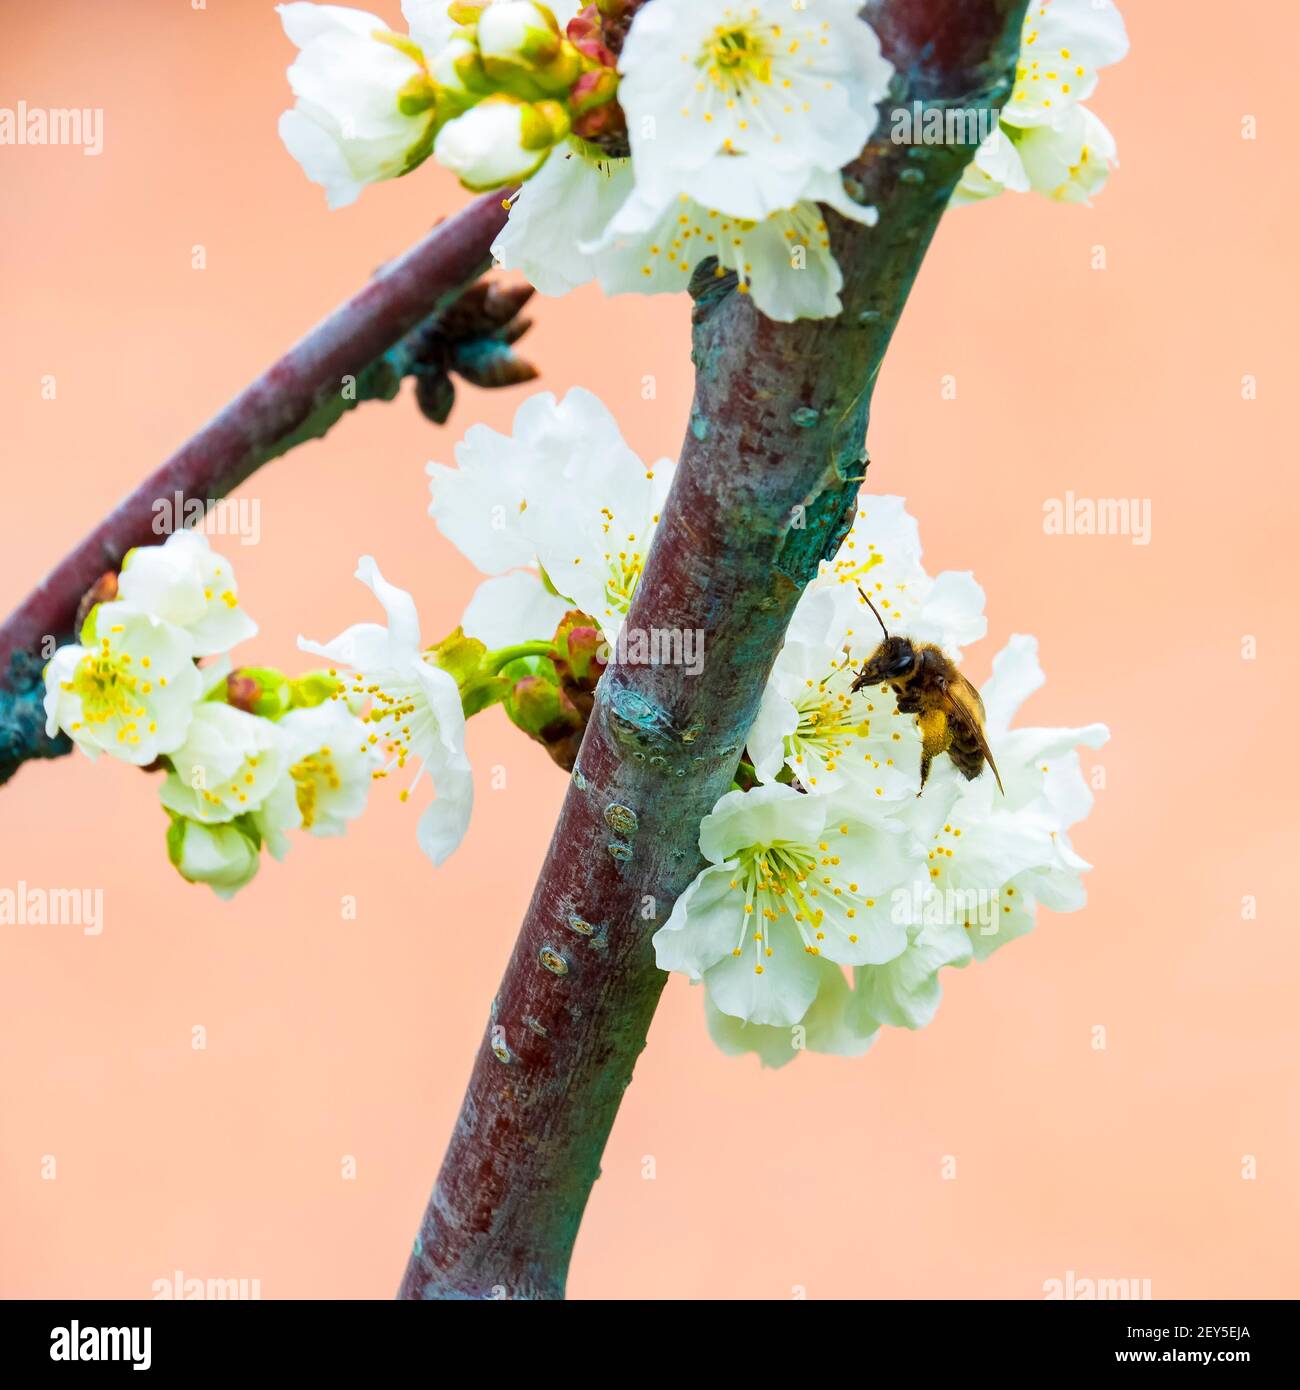 Primo piano di un'ape che impollinava un fiore di ciliegio Foto Stock